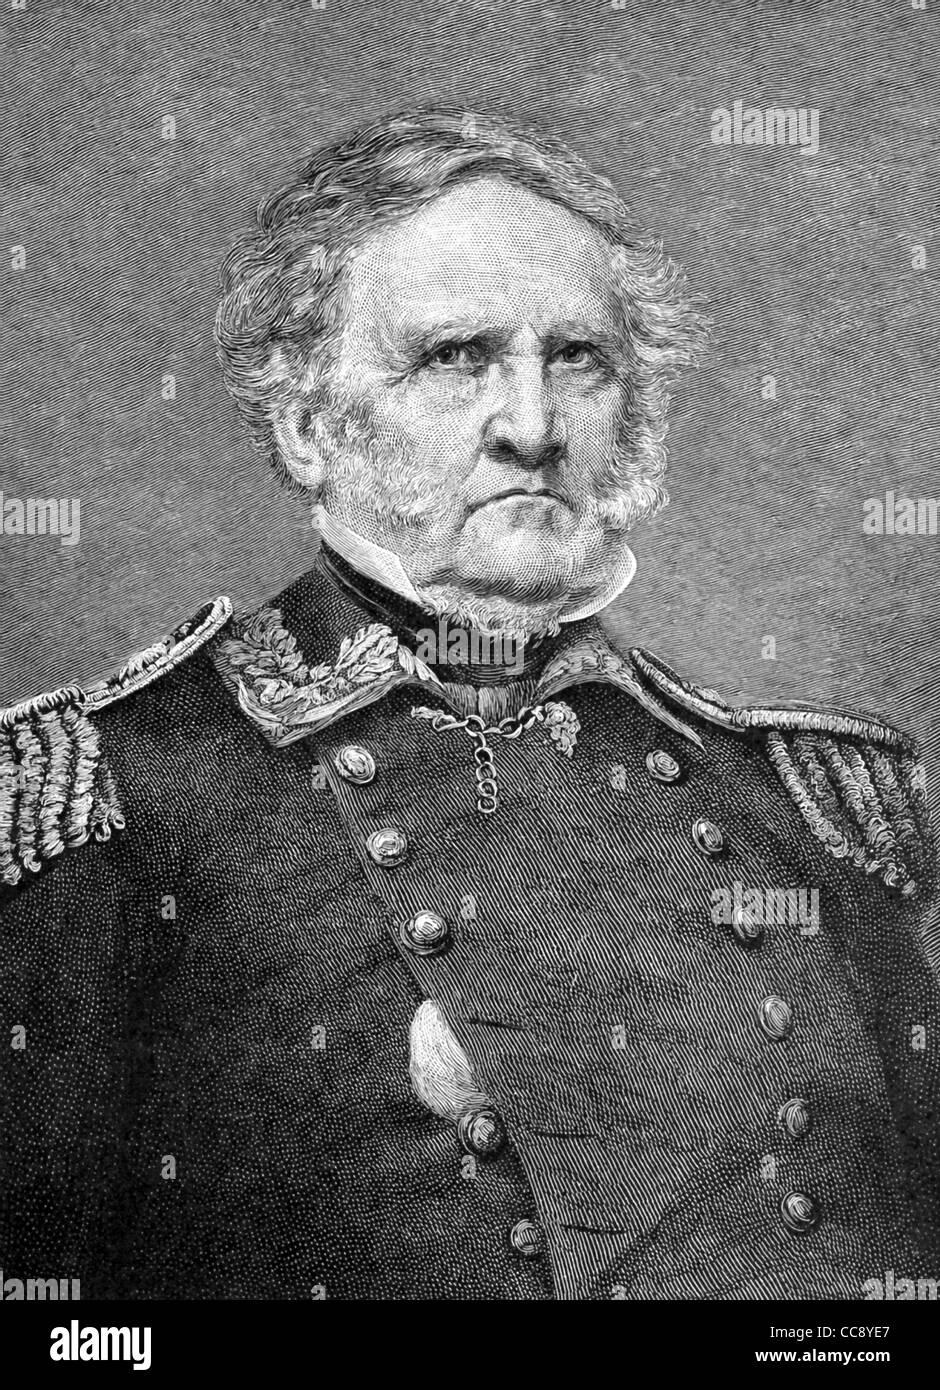 Diese Illustration von General Sam Houston (1793-1863) basiert auf einem Foto von bekannter US Civil War Fotograf Mathew Brady. Stockfoto